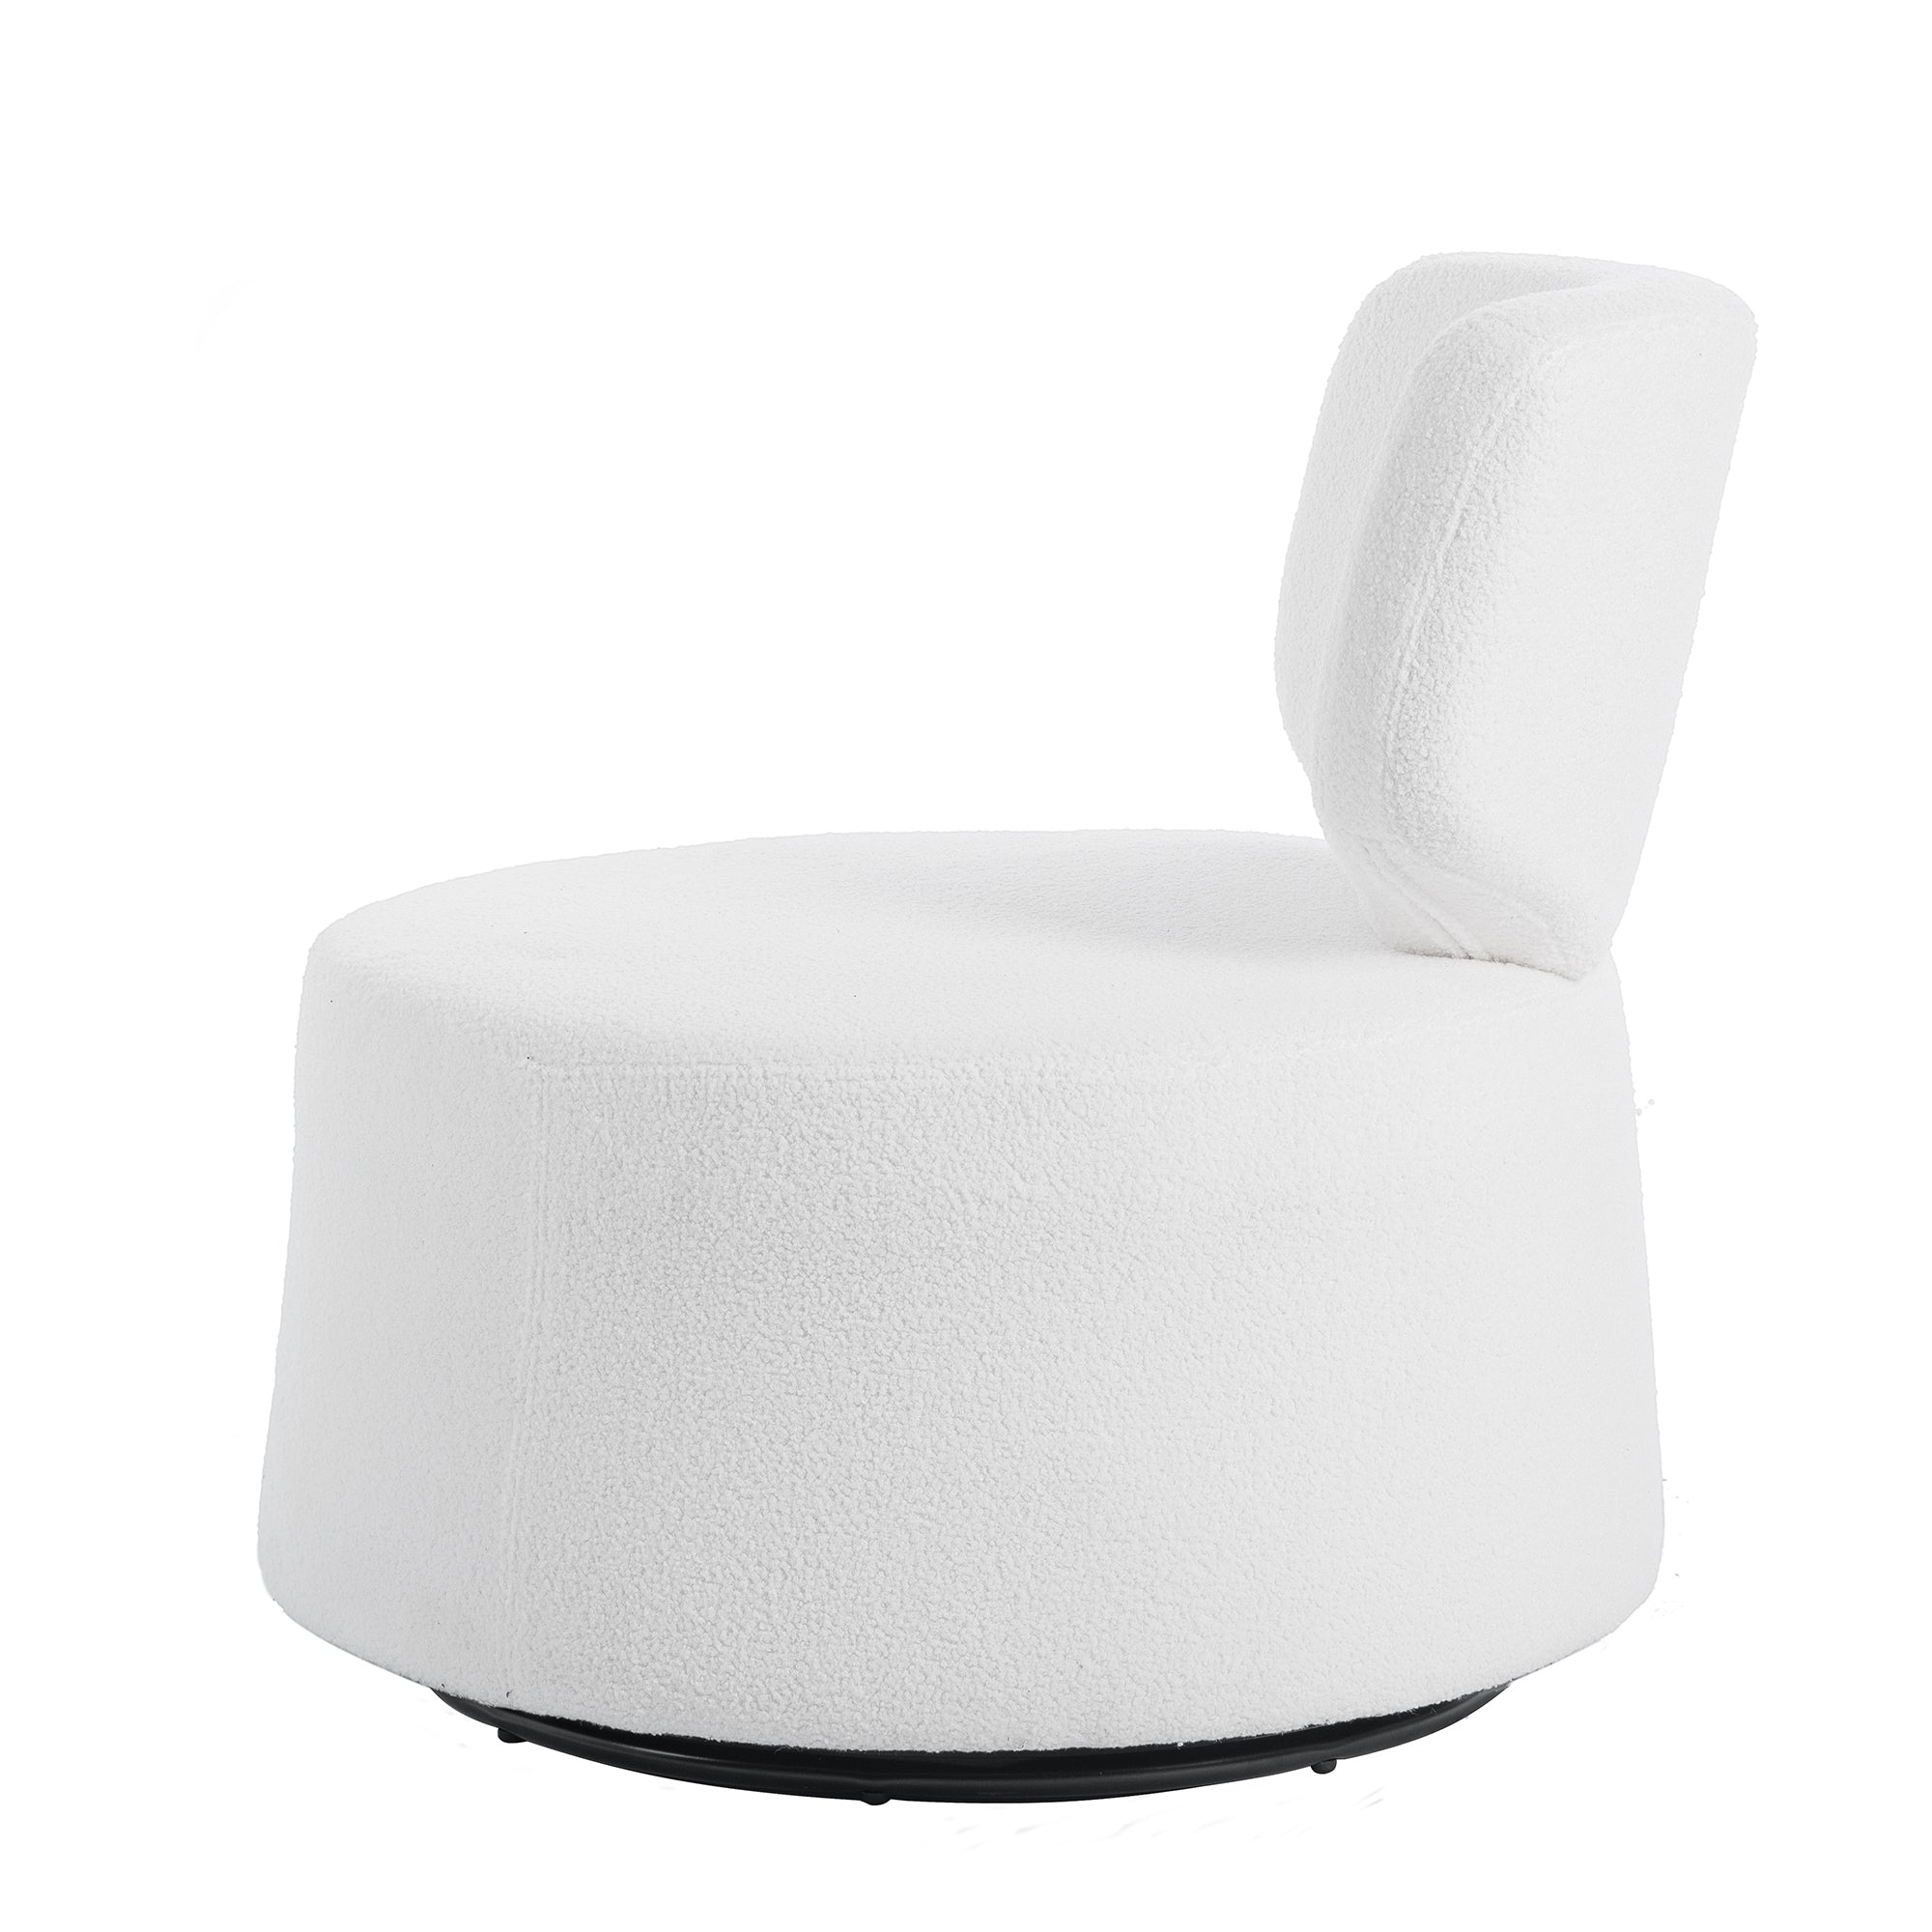 White Plush Chair